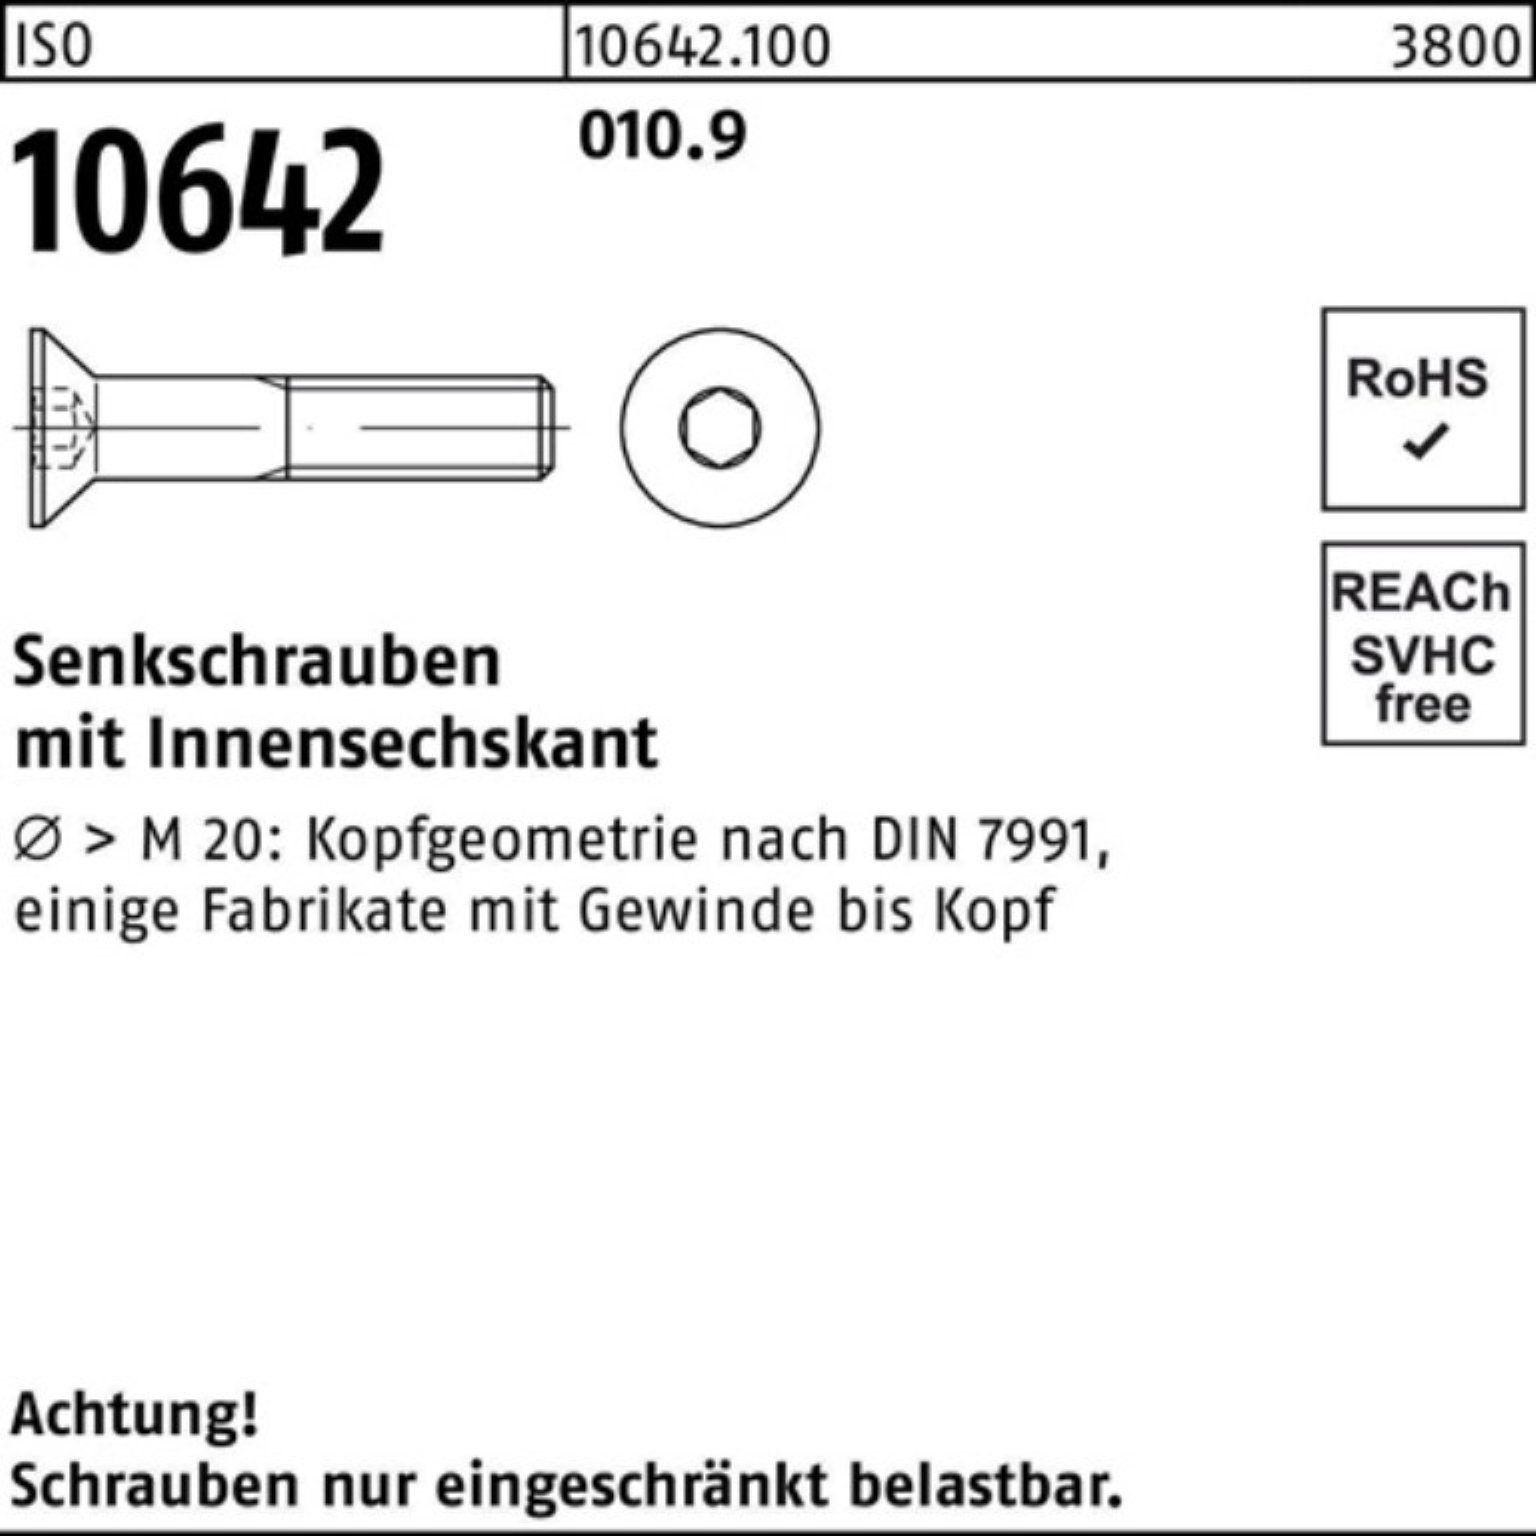 ISO 10642 Senkschraube 16 Stück Innen-6kt Pack IS Reyher Senkschraube 200 010.9 200er M8x